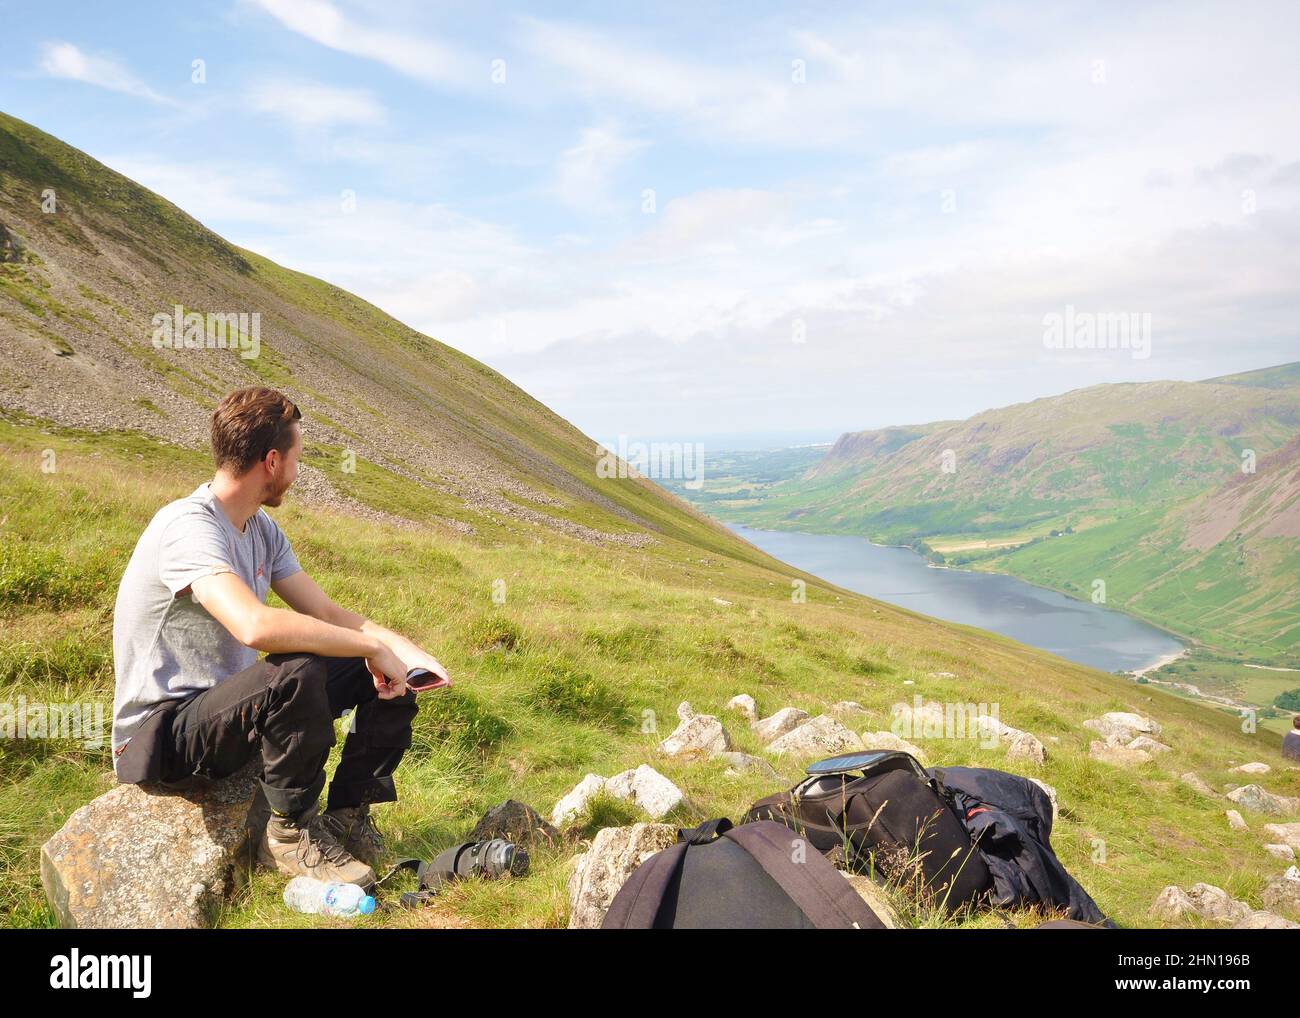 Randonneur en train de faire une pause tout en grimpant en montagne. Scafell Pike, Lake District, Royaume-Uni, vue vers Wast Water. Vue panoramique sur la montagne vers le lac avec de l'herbe Banque D'Images